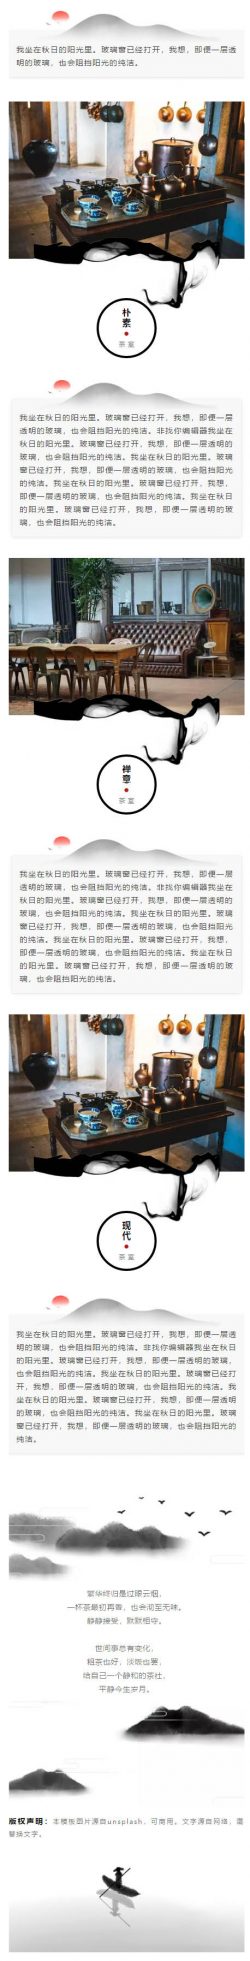 中国风水墨风格传统文化微信文章模板推送素材推文模板